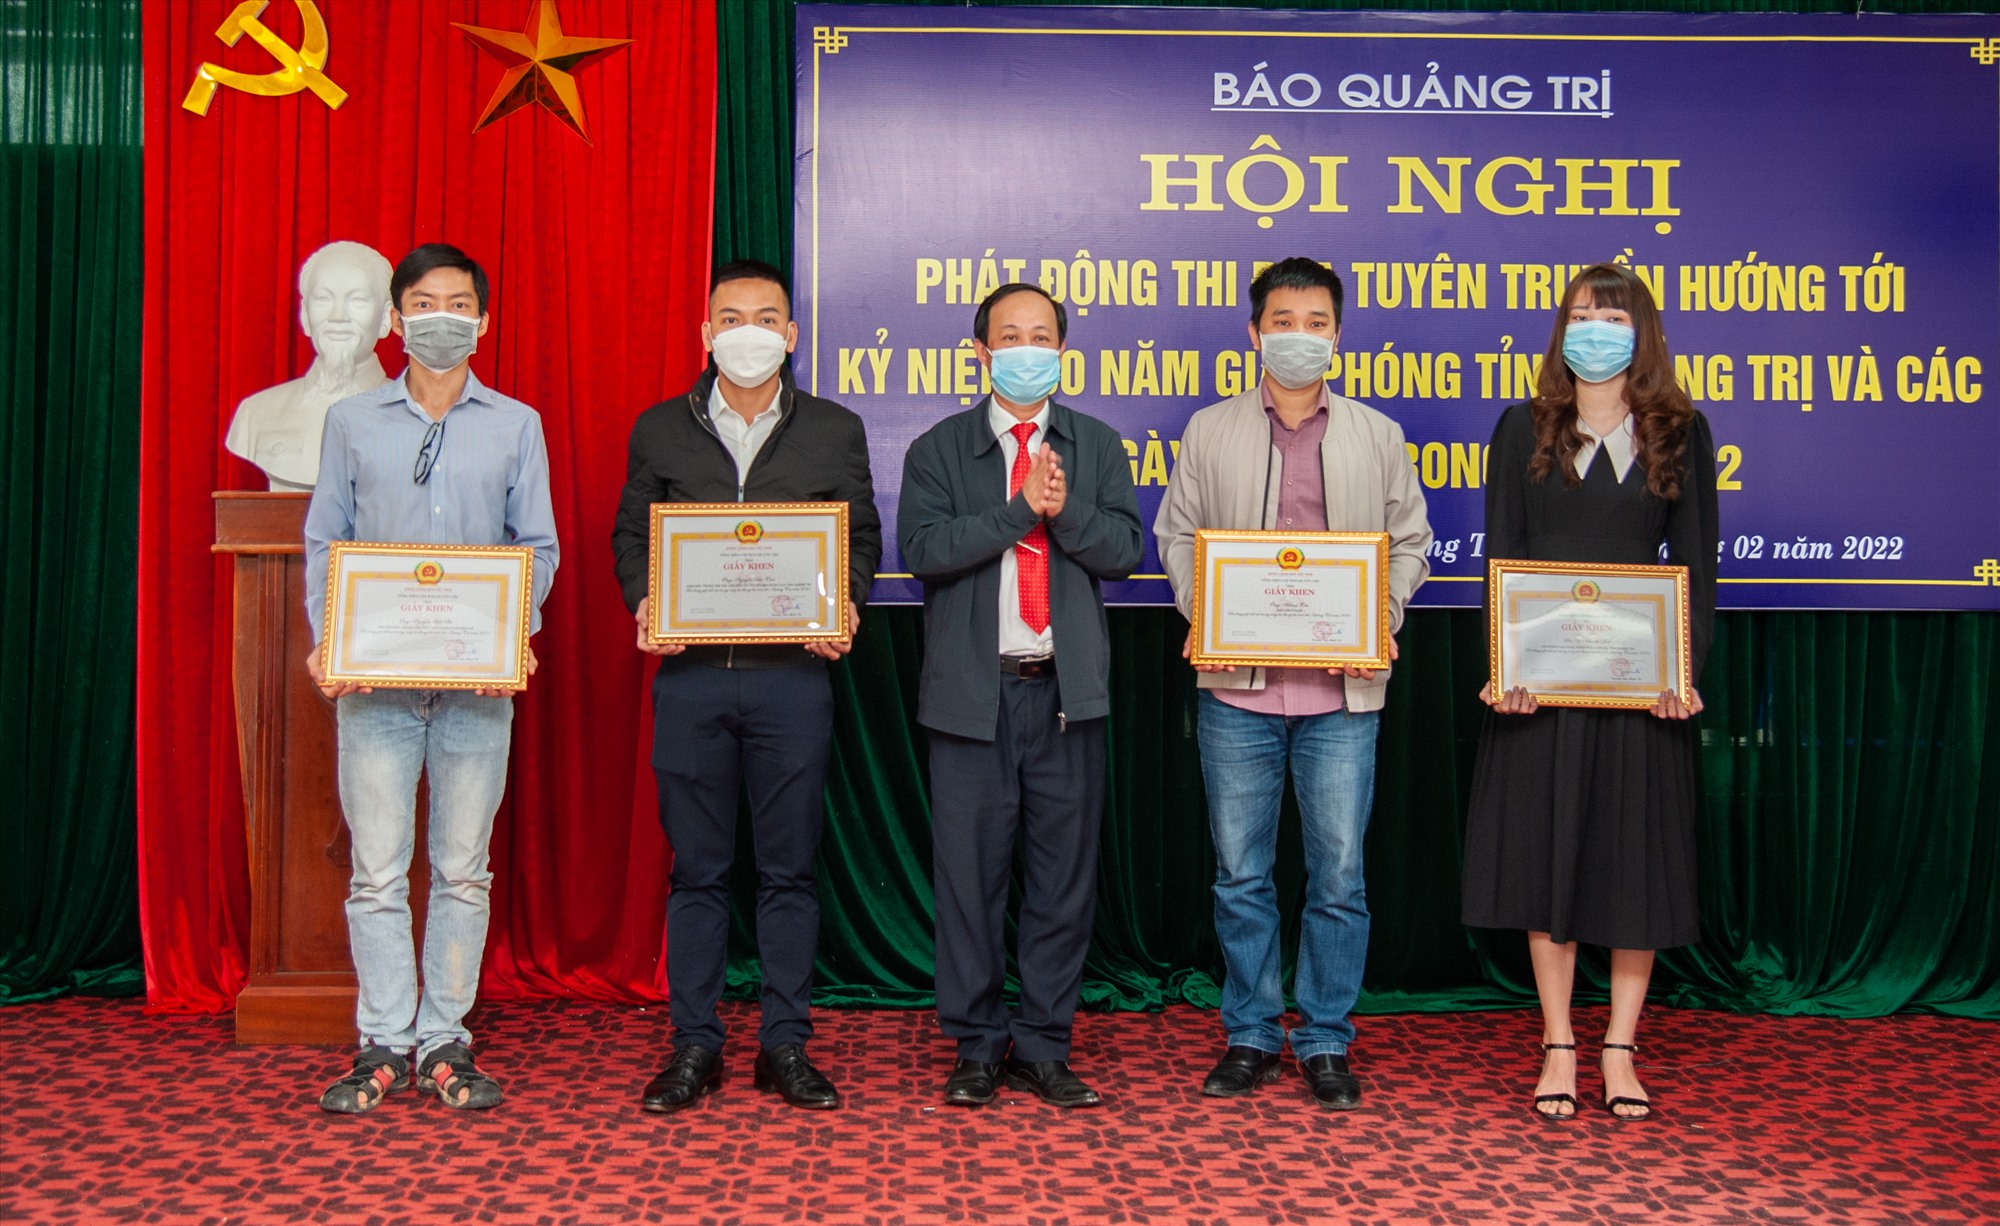 Phó Tổng Biên tập Báo Quảng Trị Nguyễn Chí Linh trao Giấy khen cho các cộng tác viên - Ảnh: Trần Tuyền